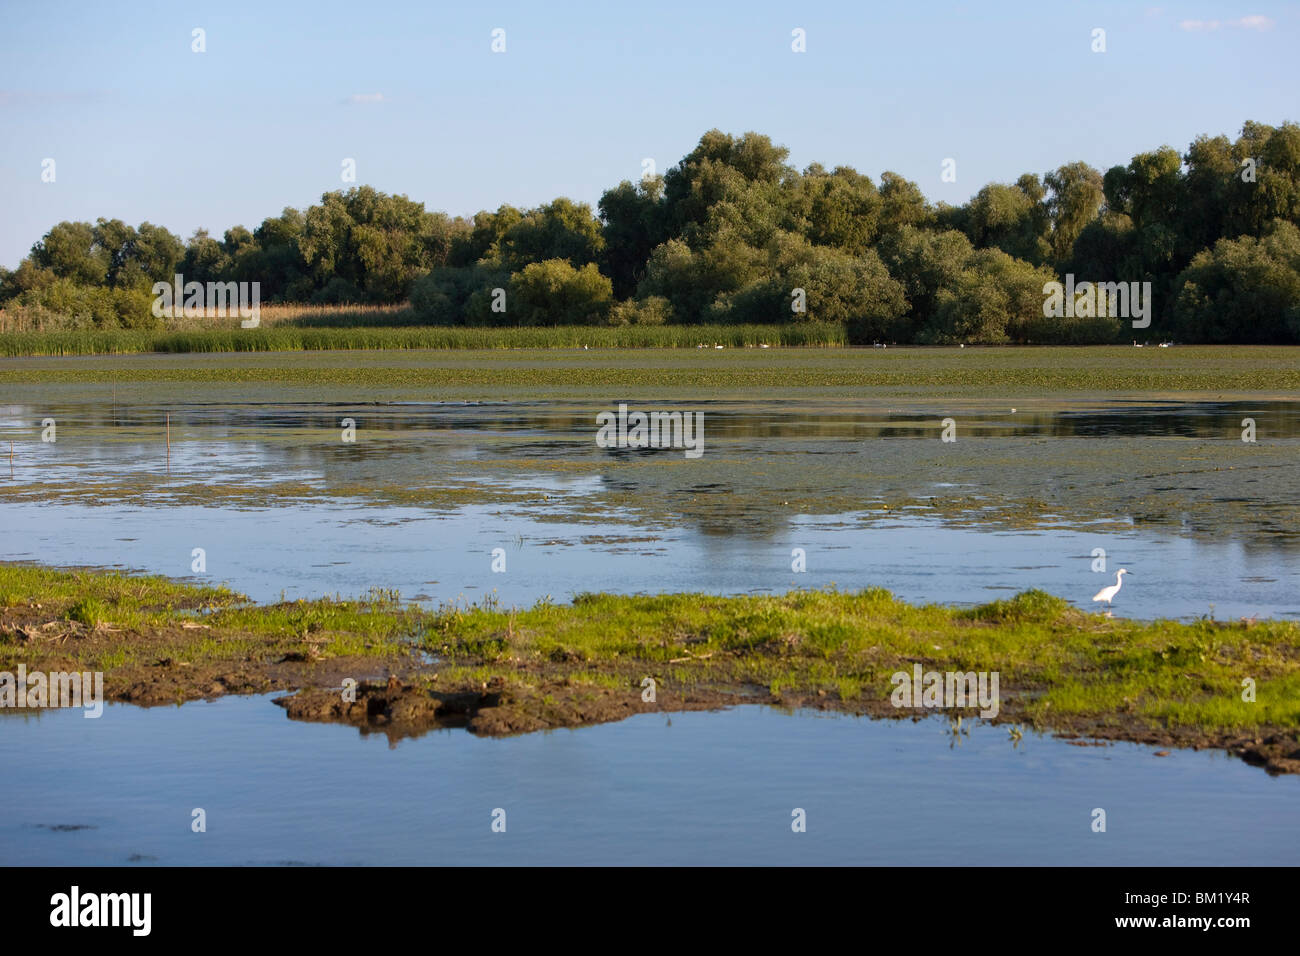 Danube River delta, Romania, Europe Stock Photo